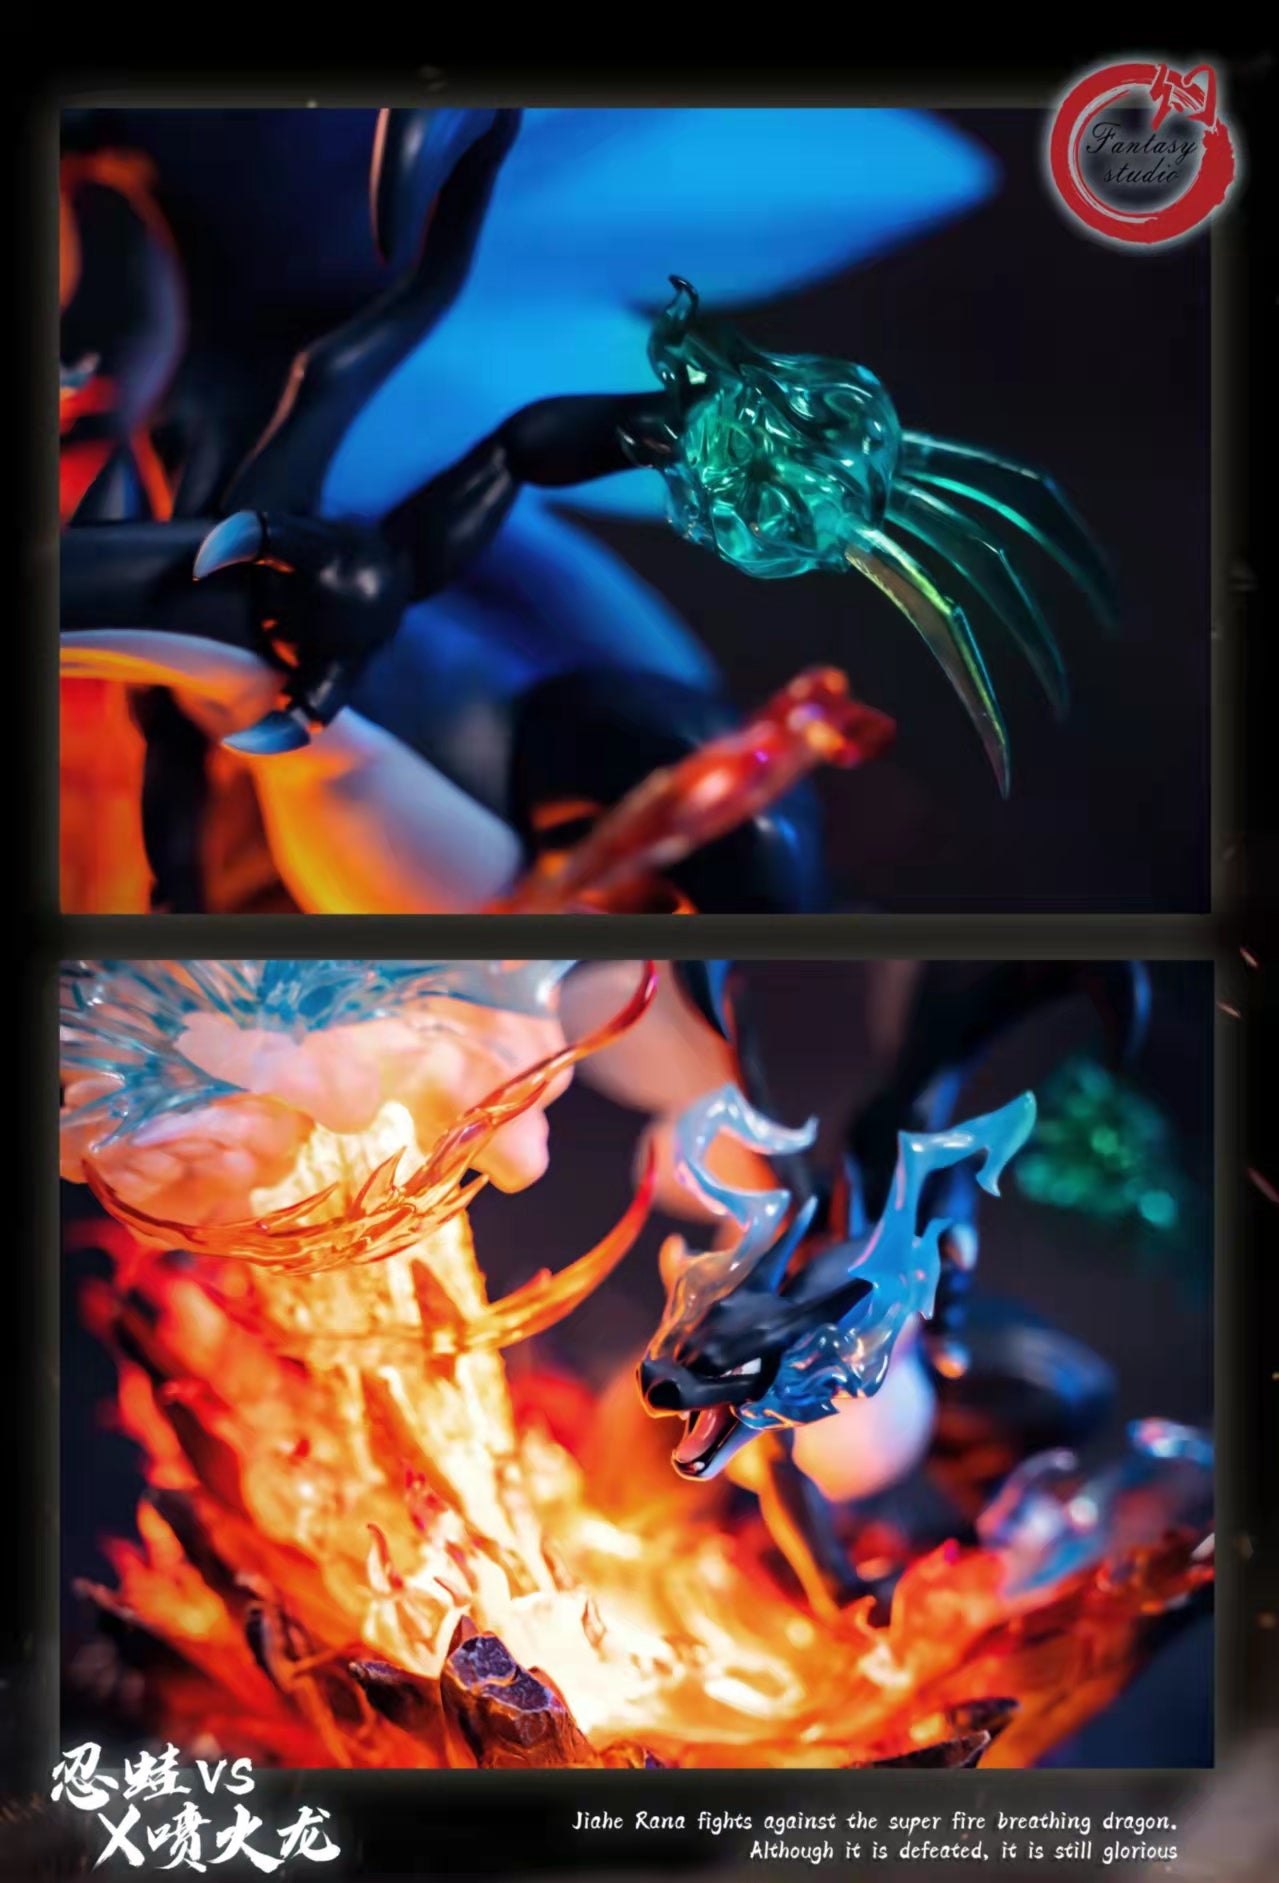 〖Sold Out〗Pokemon Mega Charizard X vs Greninja Model Statue Resin - Fantasy Studios